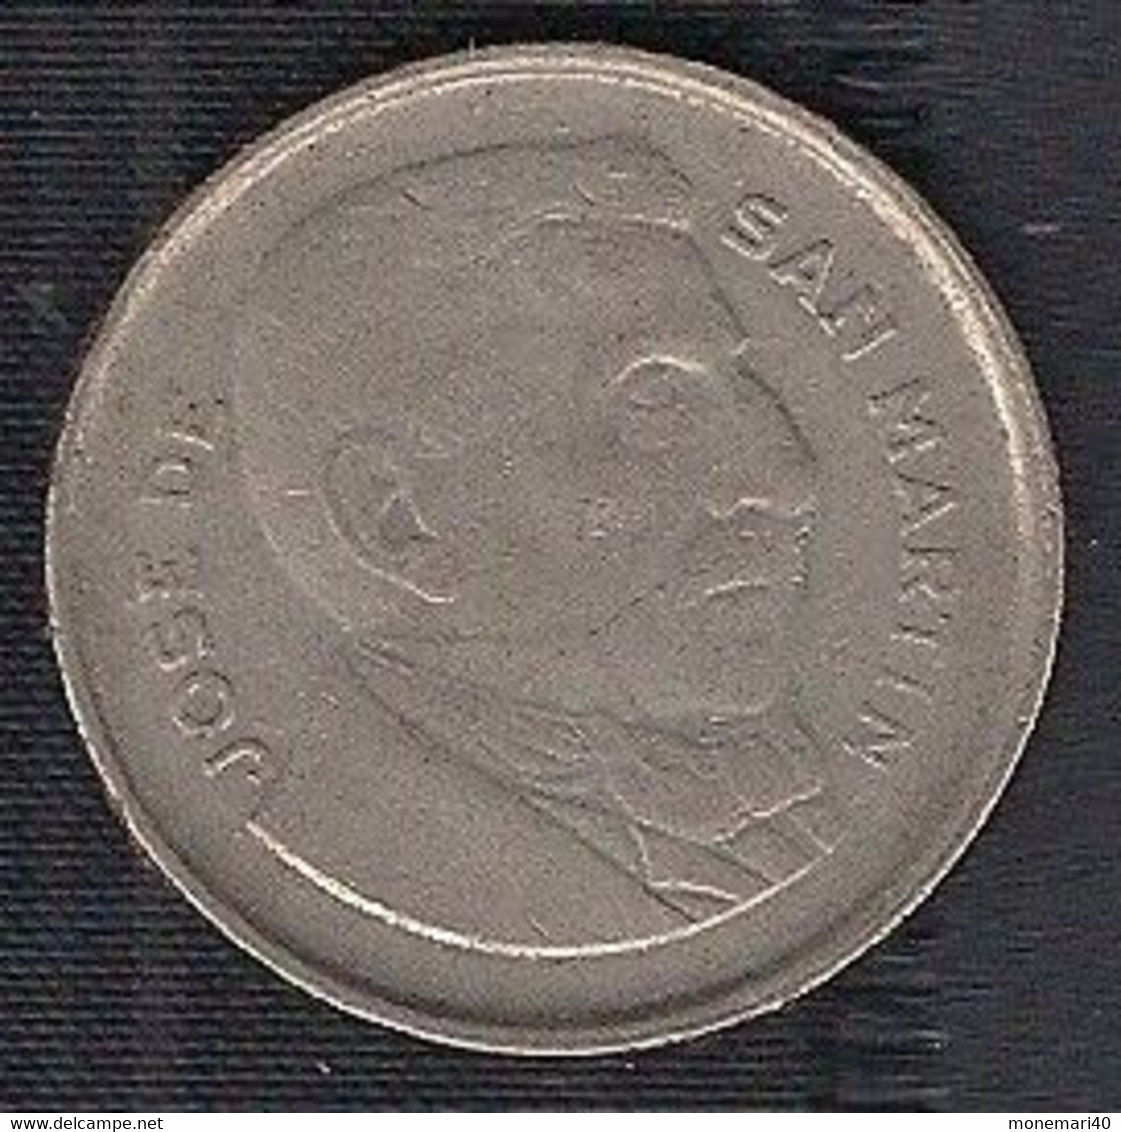 ARGENTINE 20 CENTAVOS - 1955 - Africa Oriental Álemana